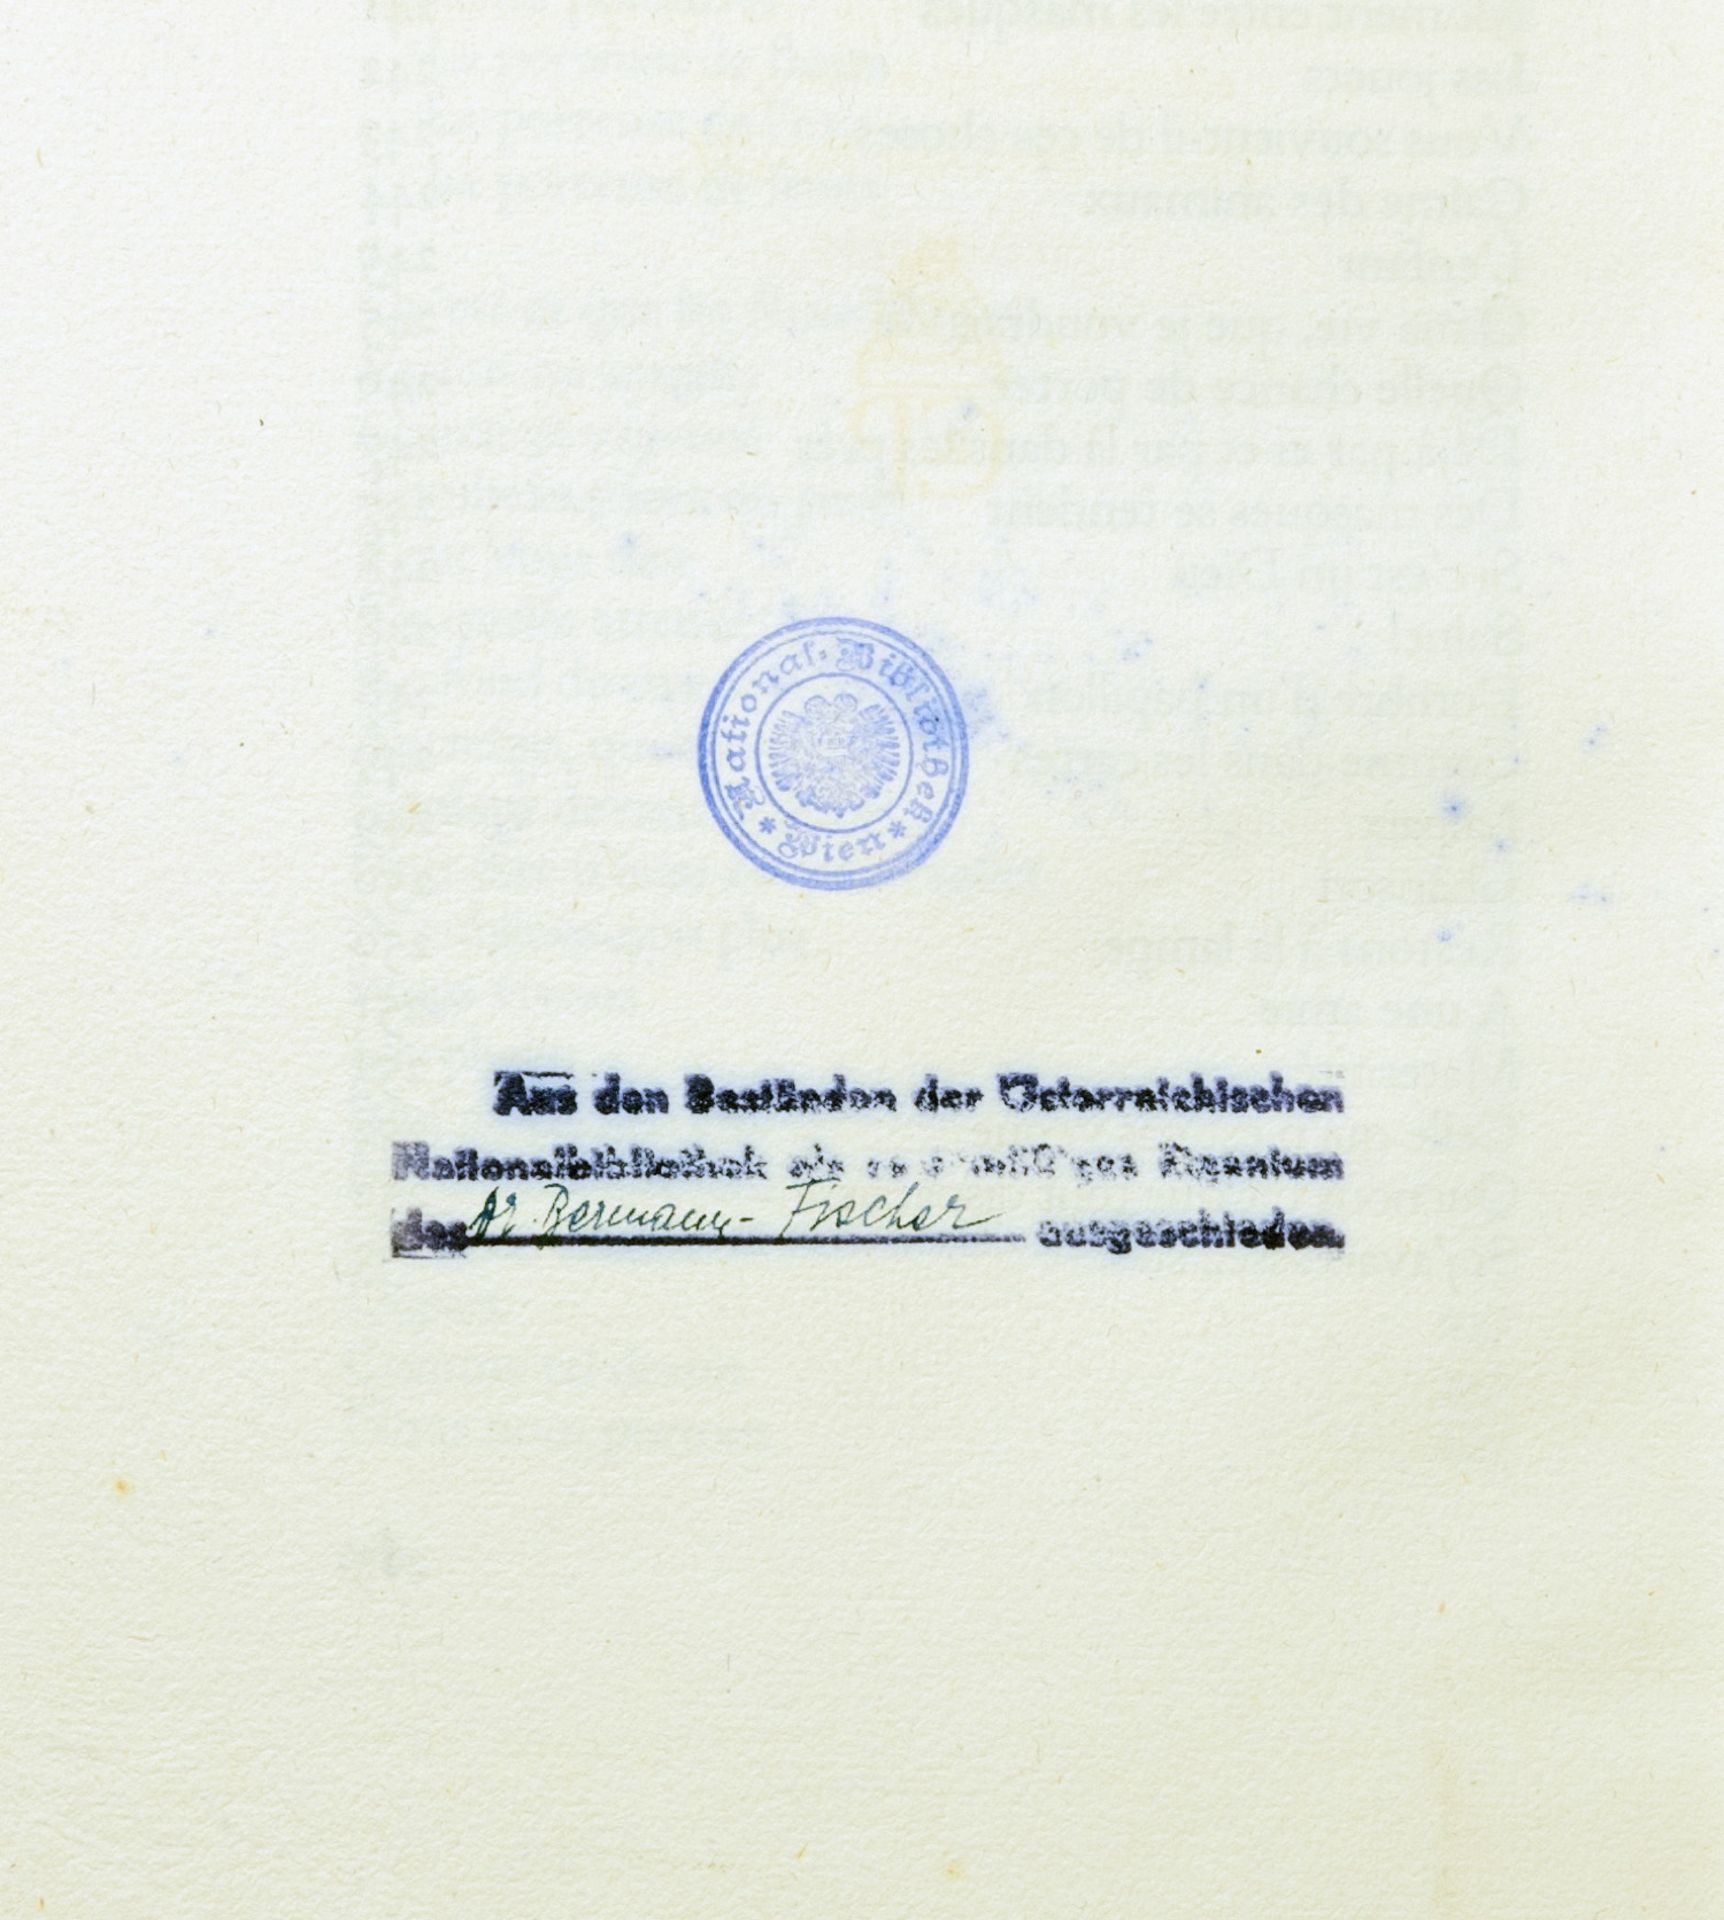 Cranach-Presse - Rainer Maria Rilke. Gesammelte Gedichte. - Image 3 of 3